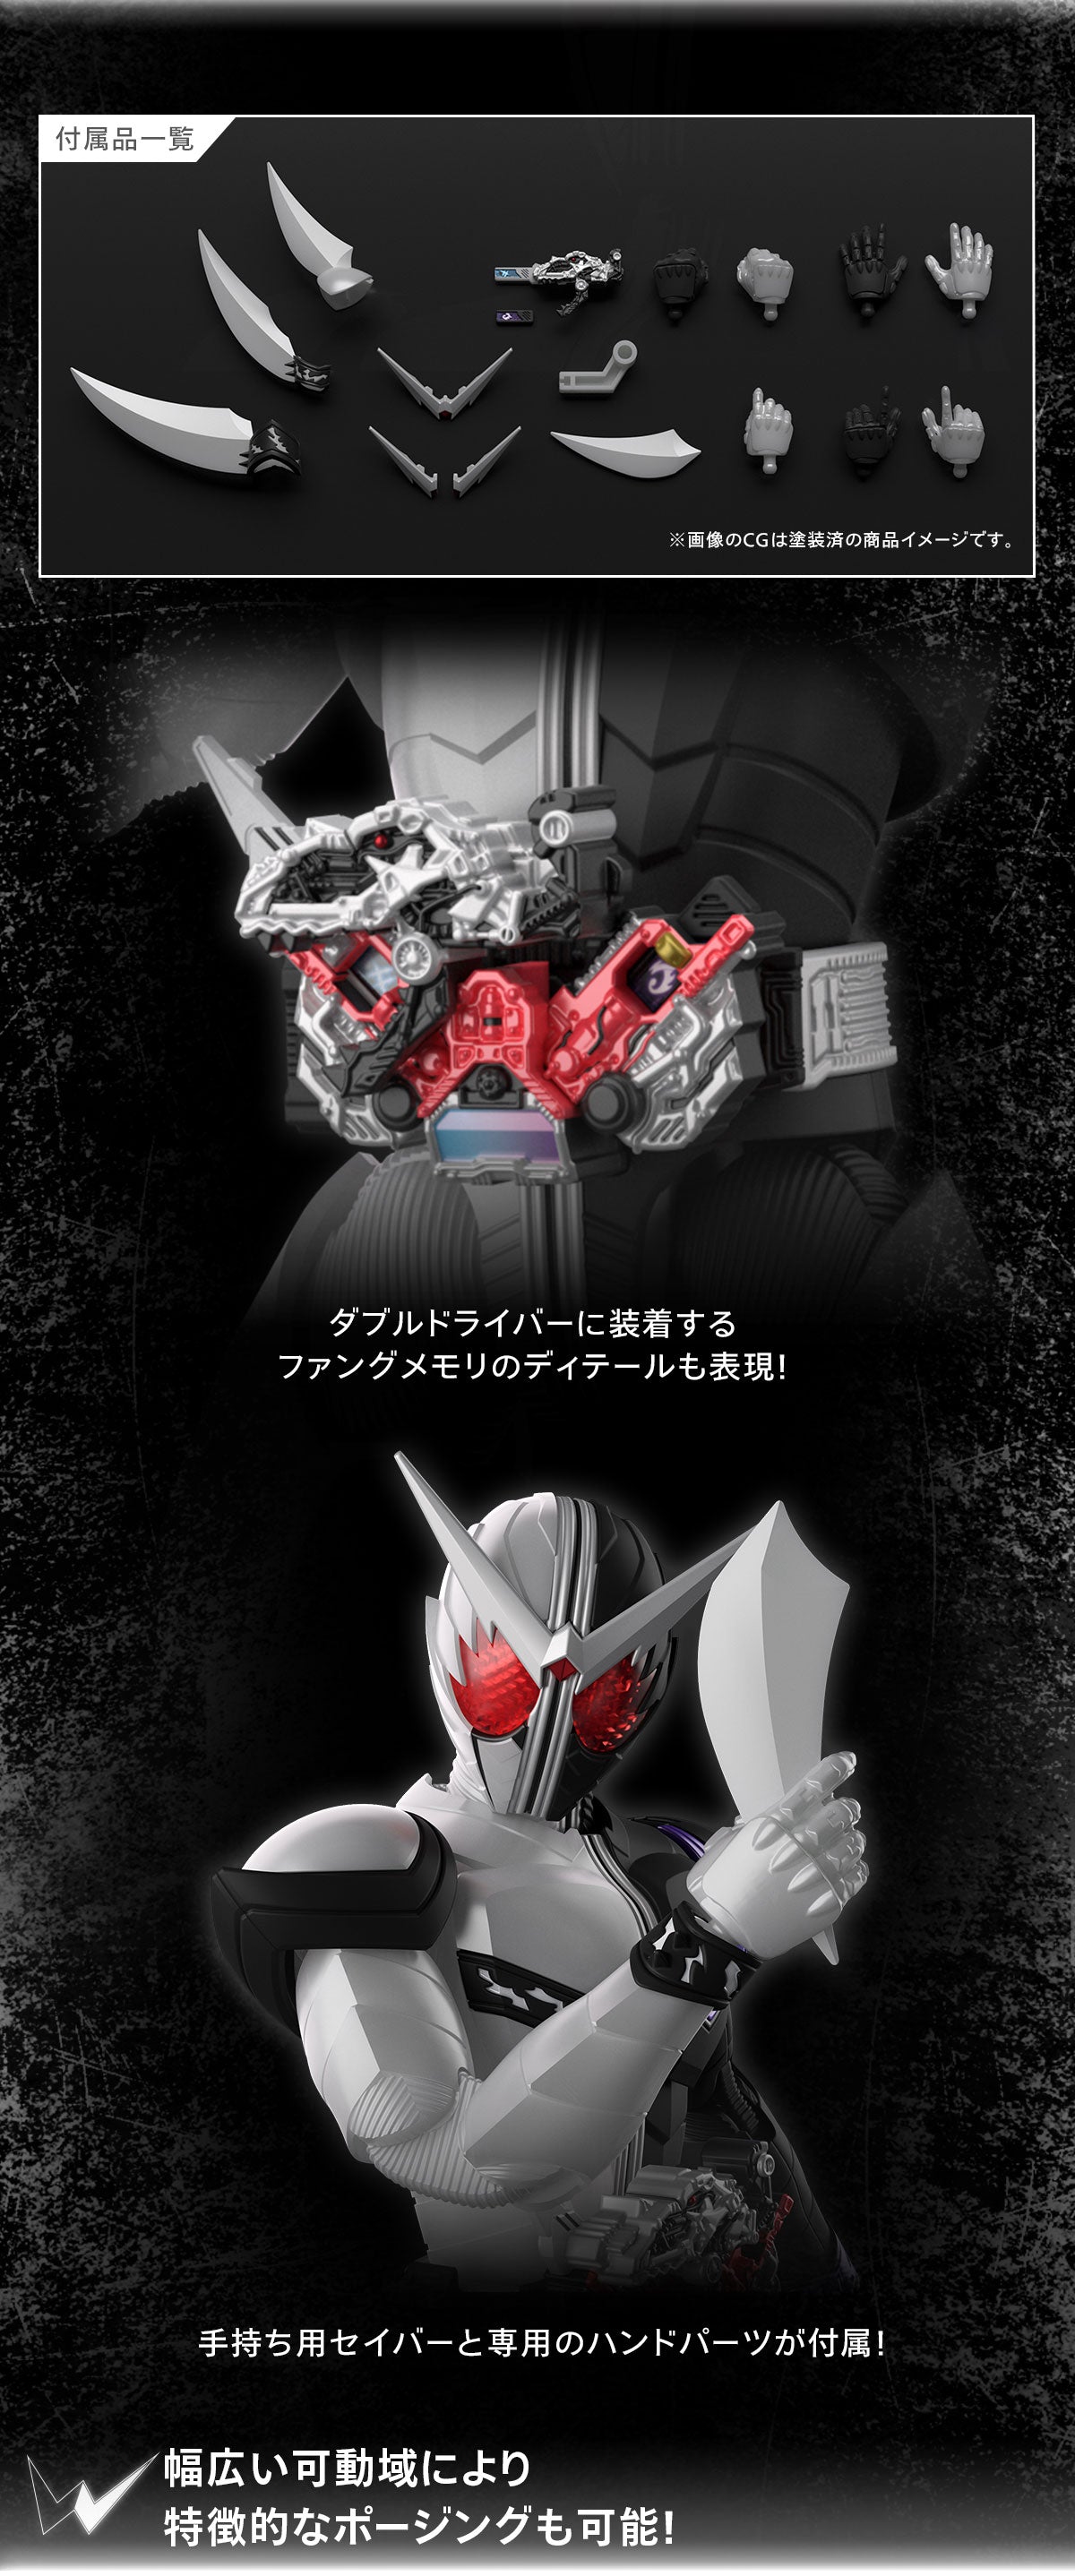 Figurenförmiger Standard Kamen Rider Double Fang Joker 